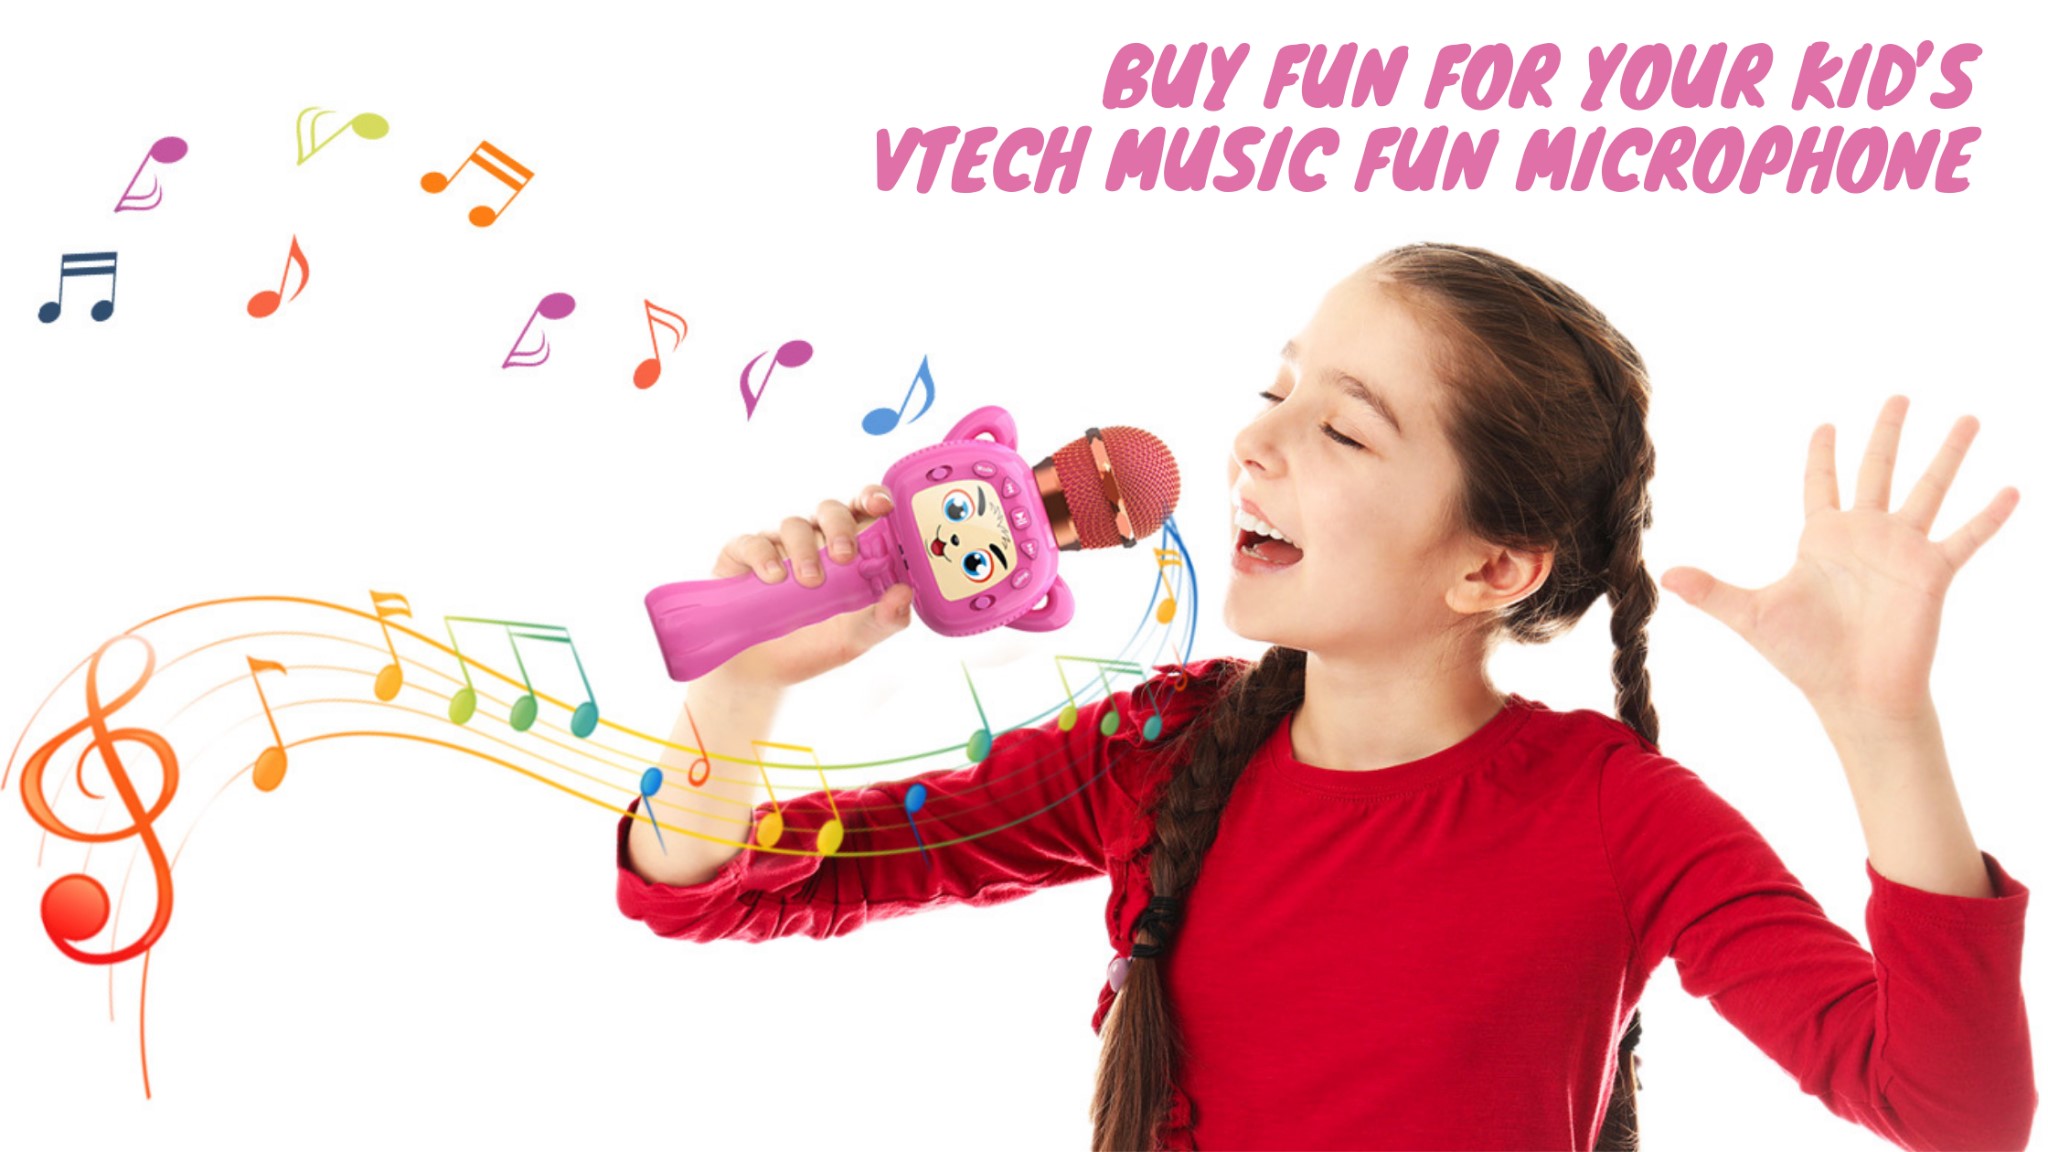 купите развлечение для своих детей vetch music fun микрофон